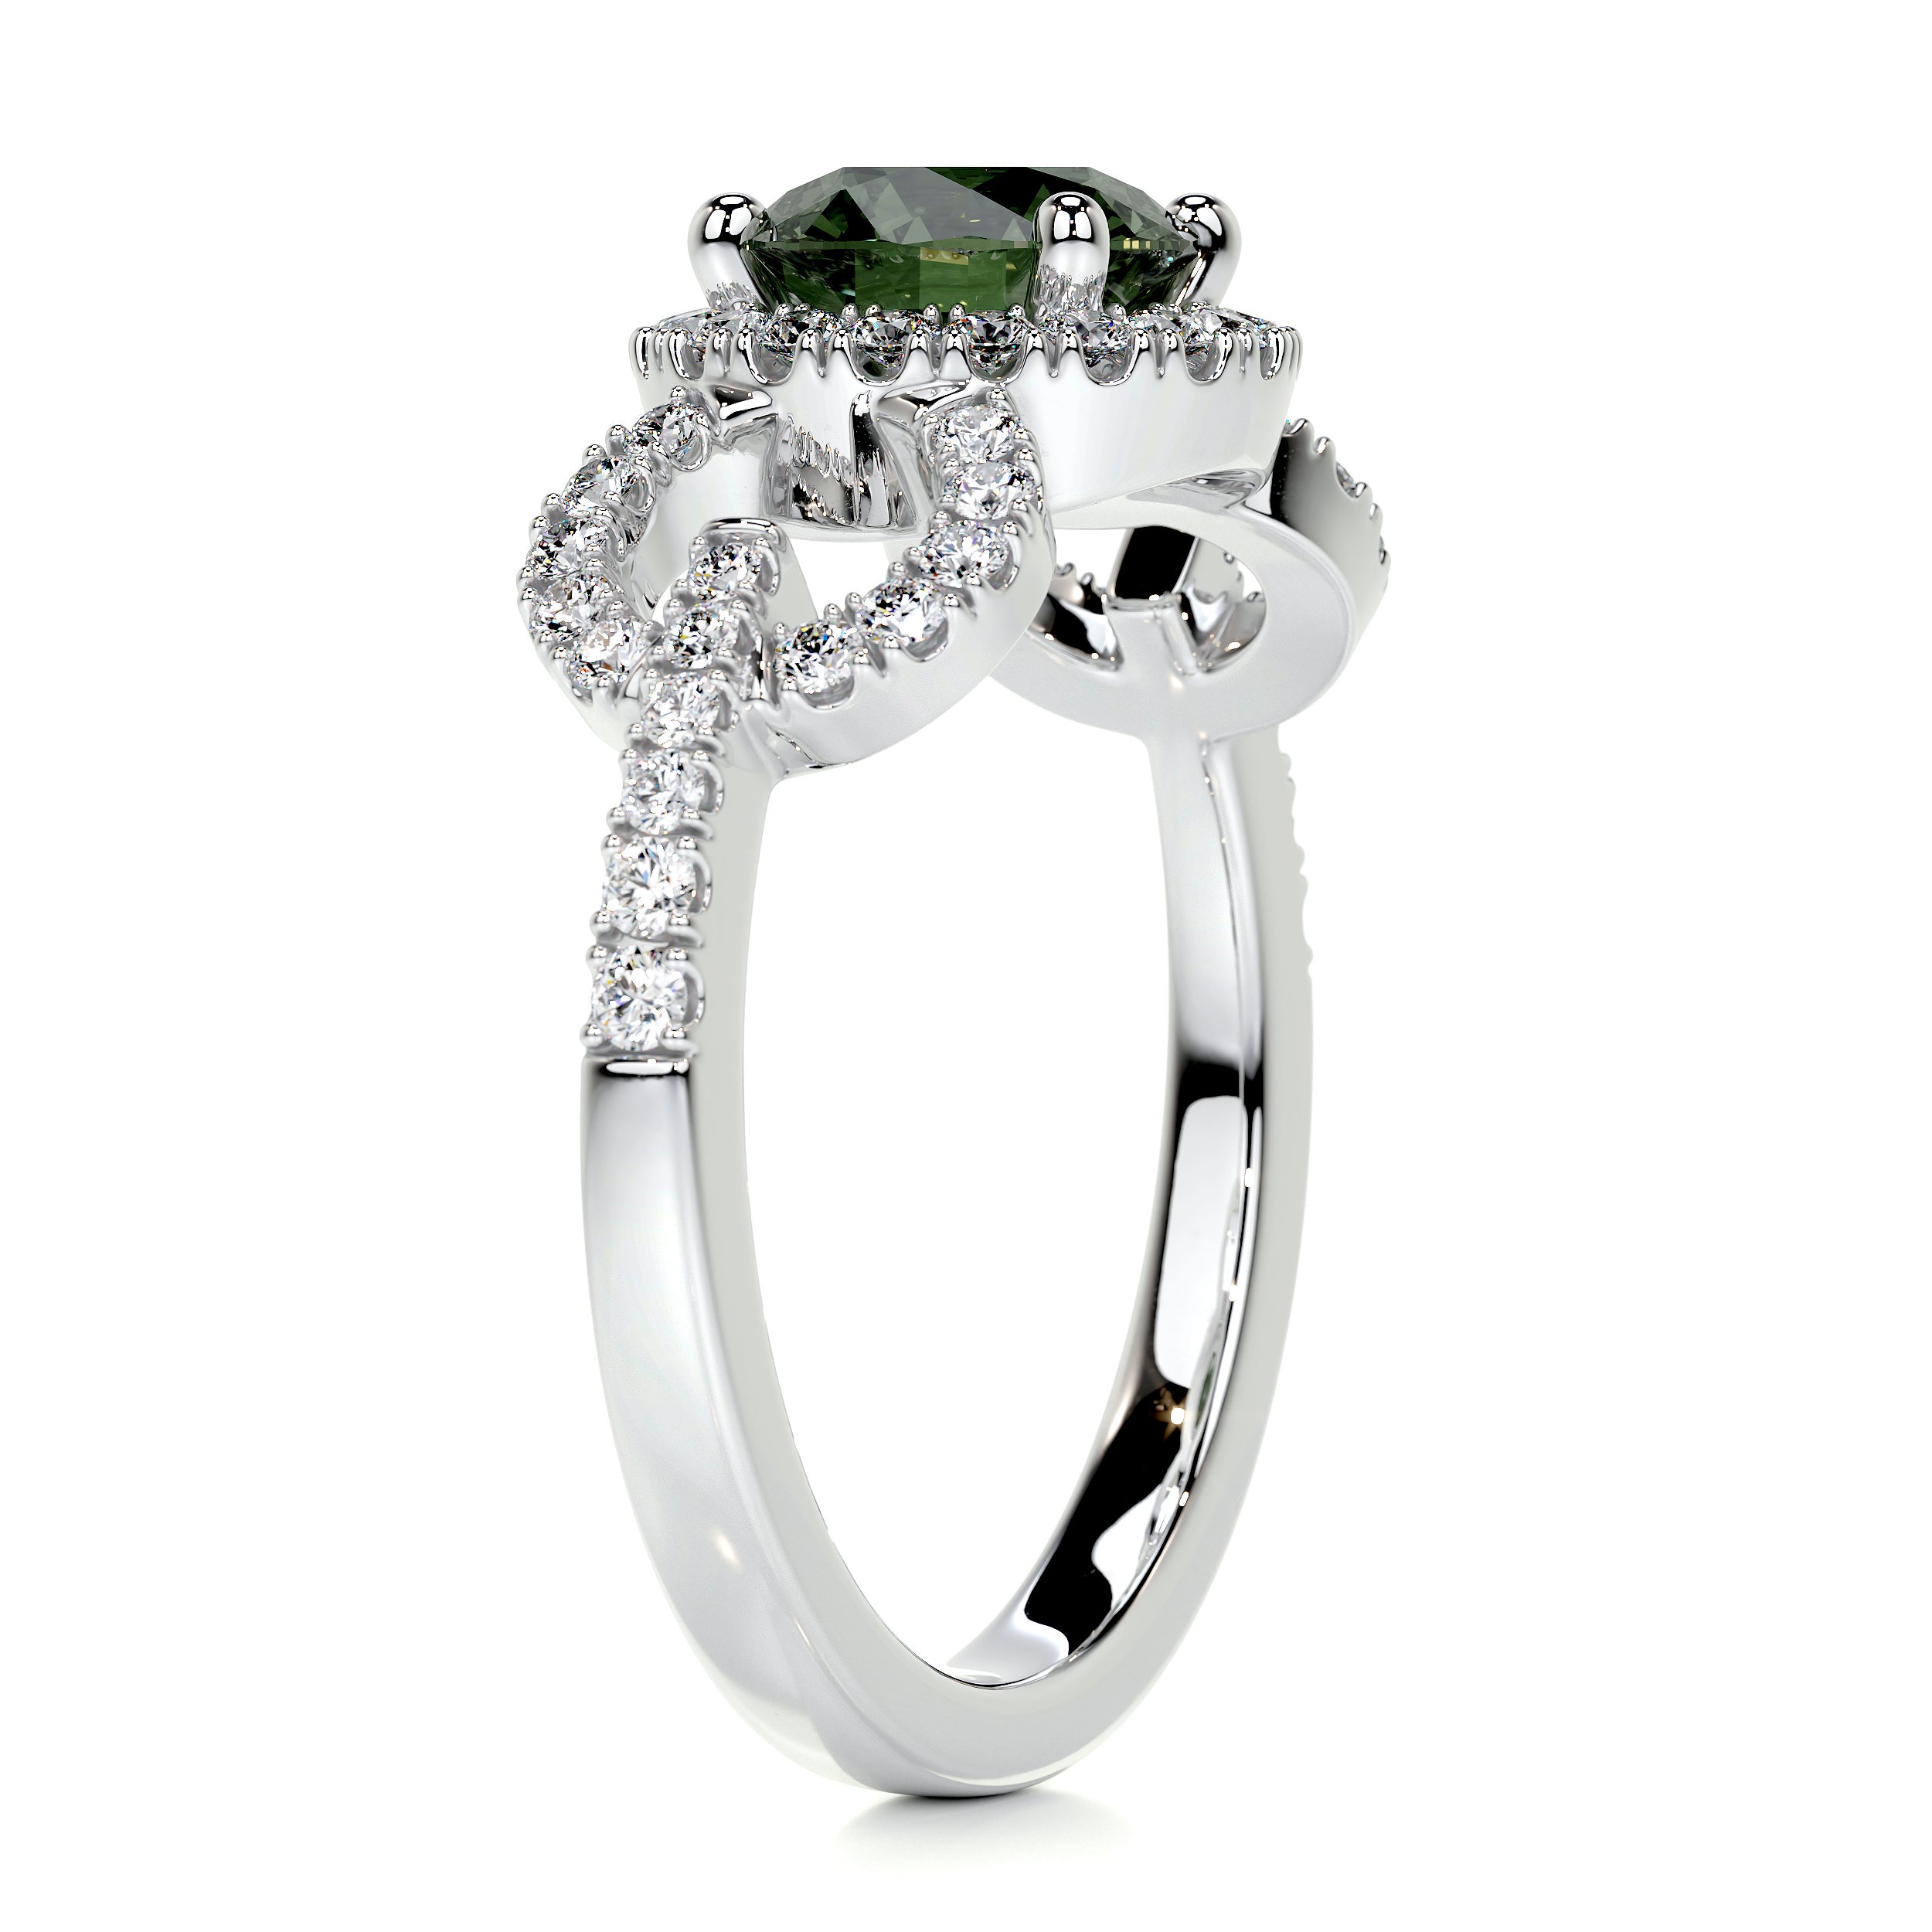 Elize Gemstone & Diamonds Ring   (1.25 Carat) -18K White Gold